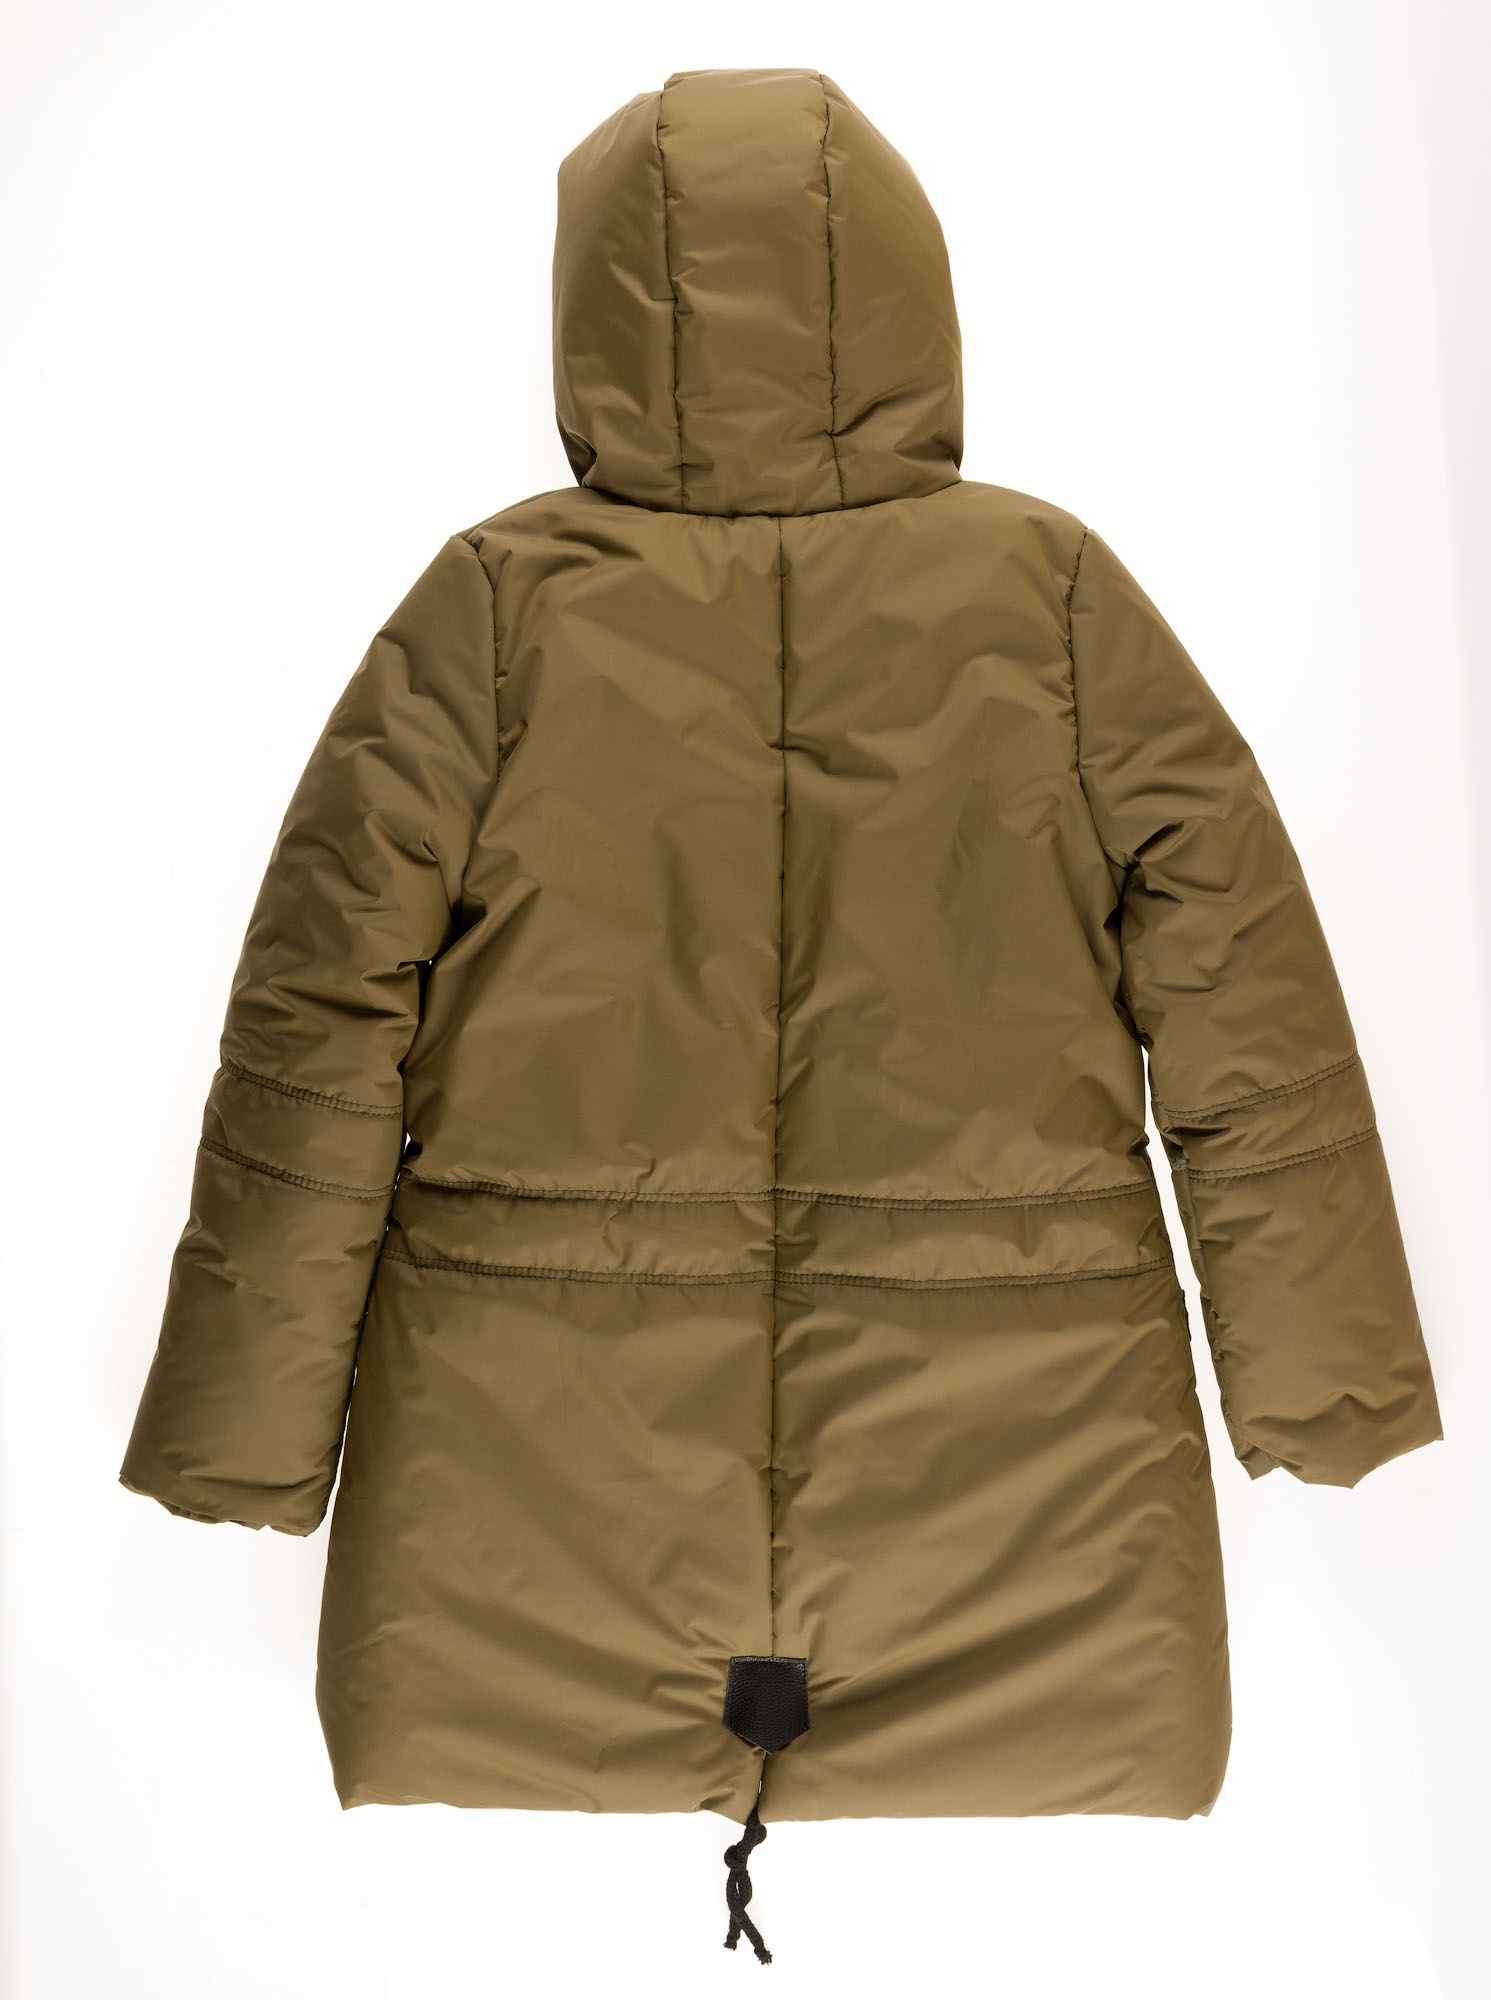 Куртка зимняя для девочки Одягайко хаки 20089 - розміри